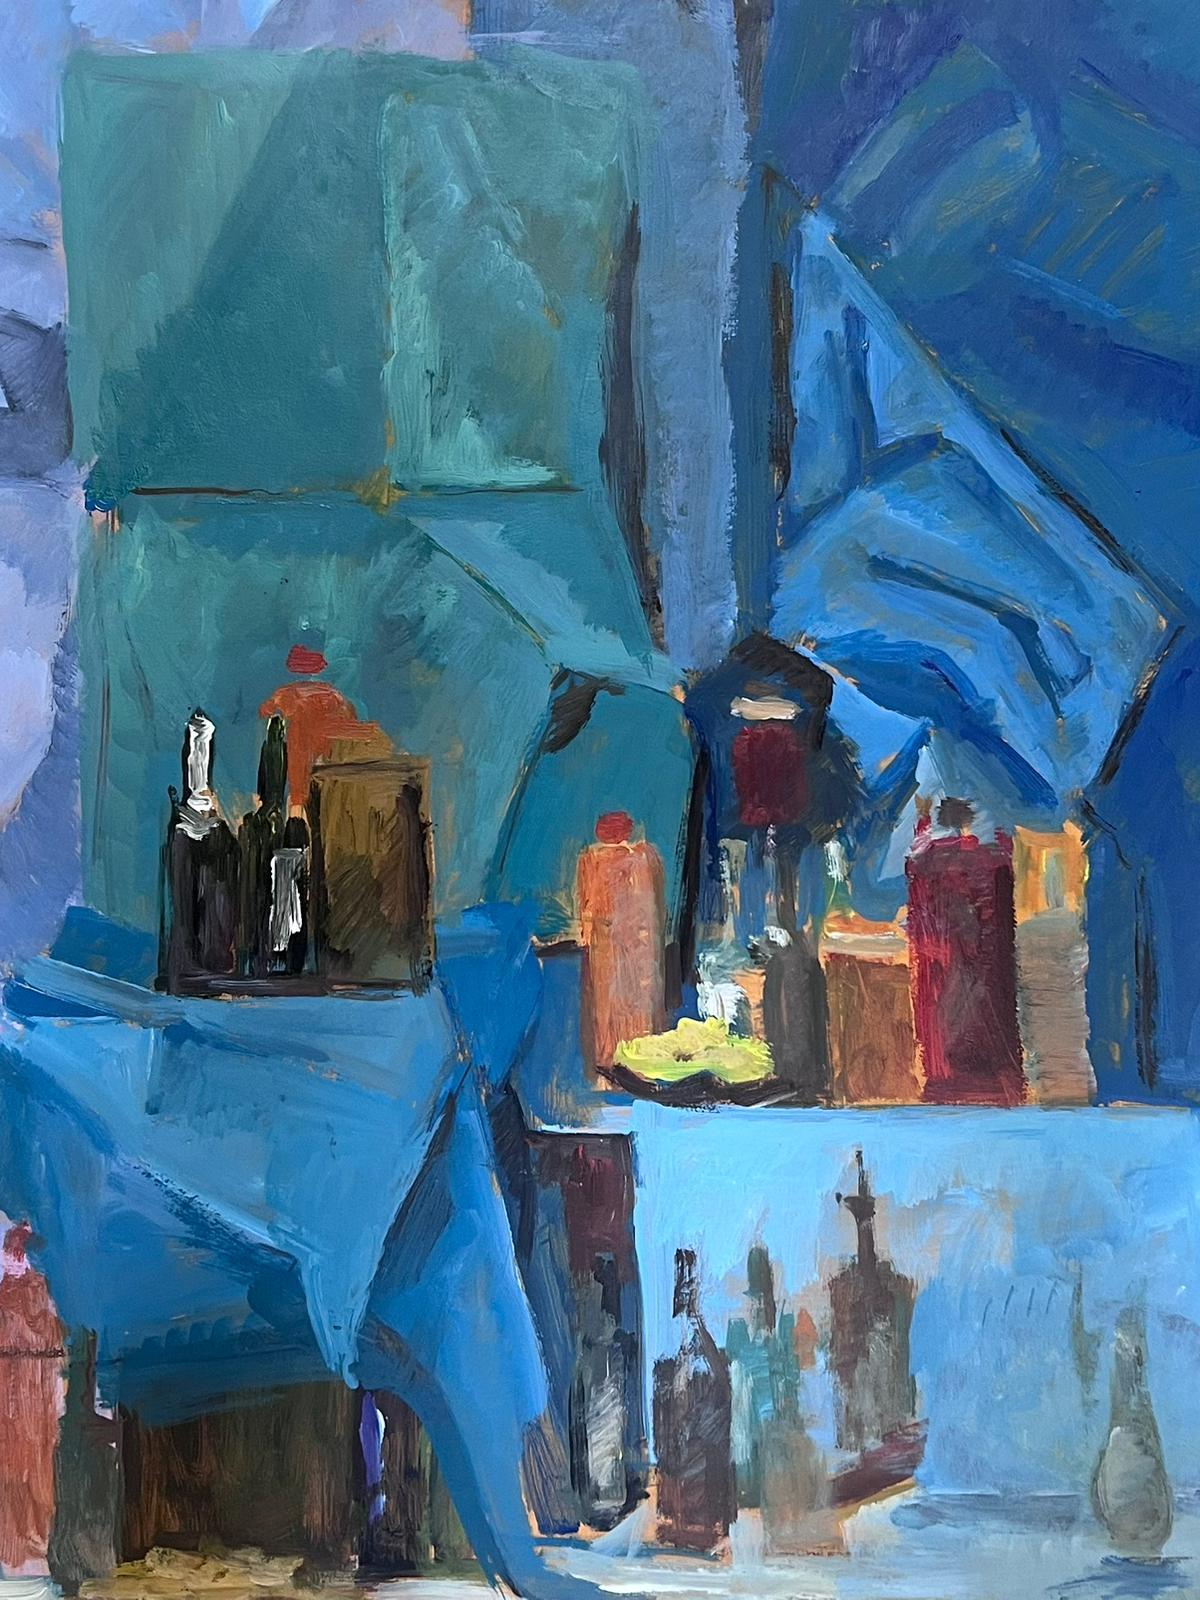 Weinflaschen
von Guy Nicod
(Französisch 1923 - 2021)
Öl auf Künstlerpapier, ungerahmt
Gemälde: 25,5 x 19,5 Zoll
Herkunft: Künstlernachlass, Frankreich
Zustand: sehr guter und gesunder Zustand